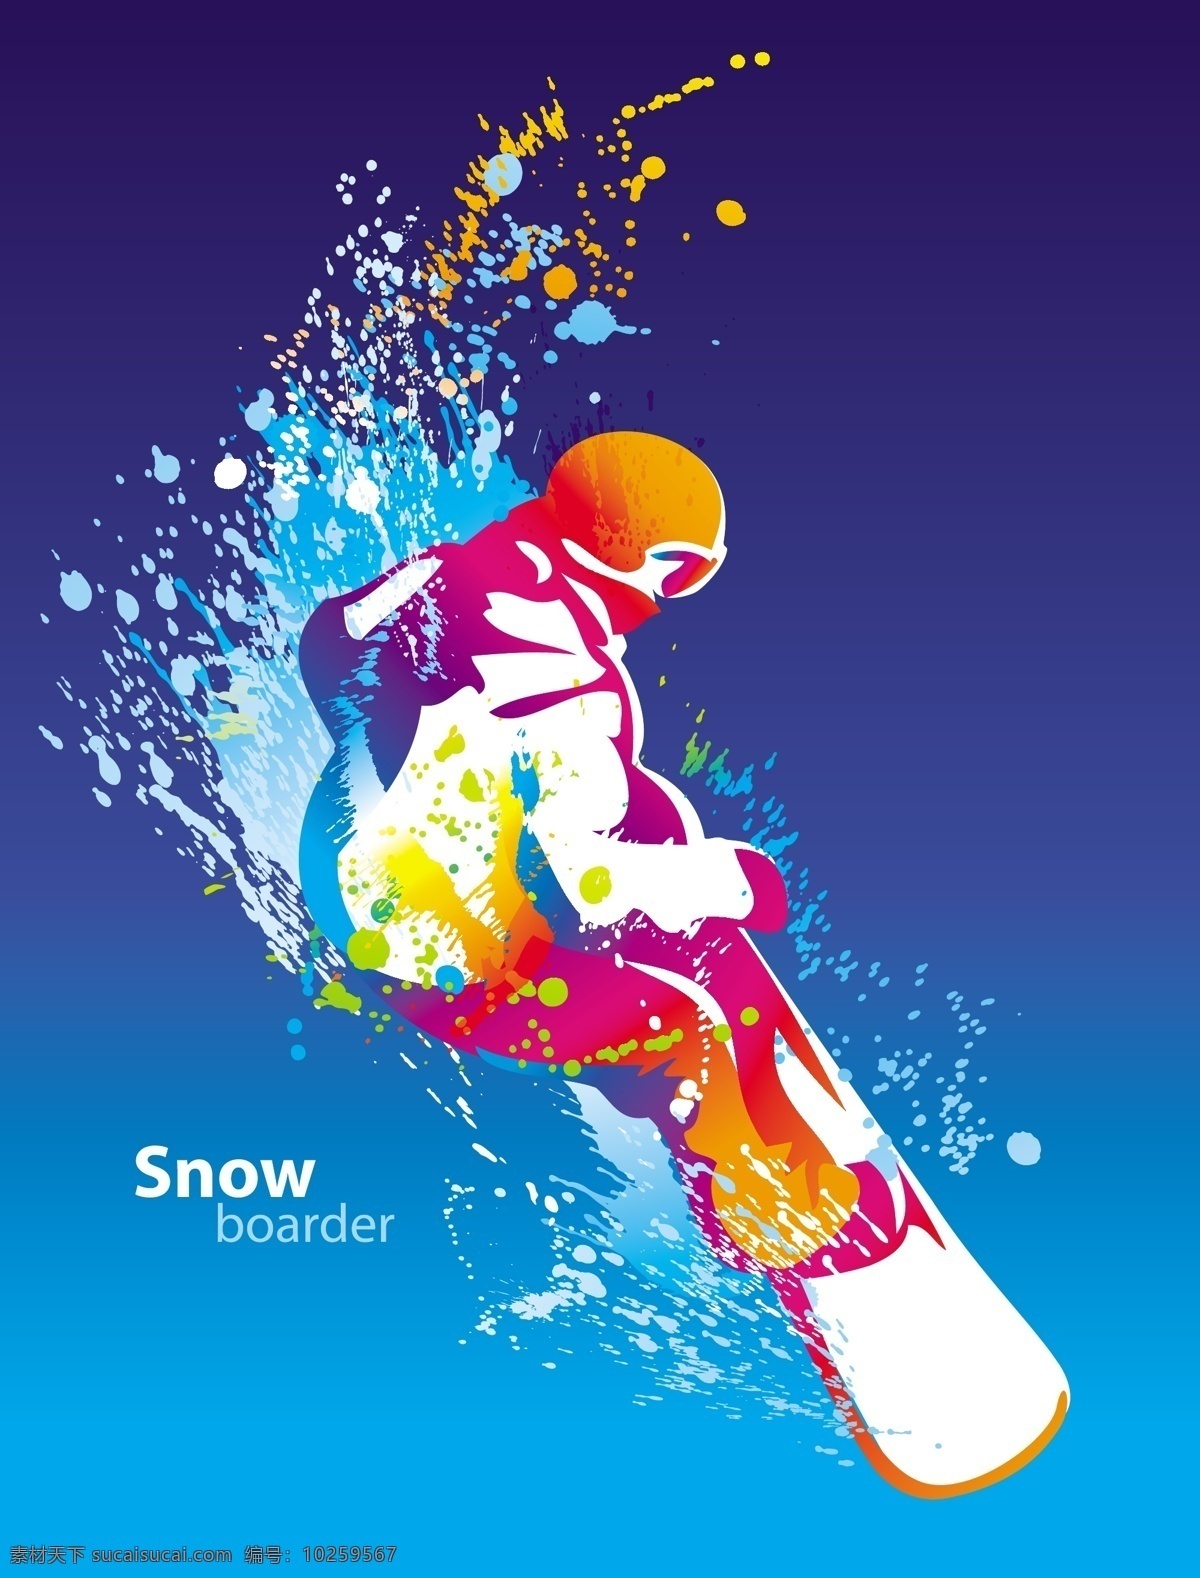 体育运动小人 滑雪 人物剪影 运动会 亚运会 奥运会 雪上运动 矢量图 体育 运动 标识 矢量人物 矢量 职业人物